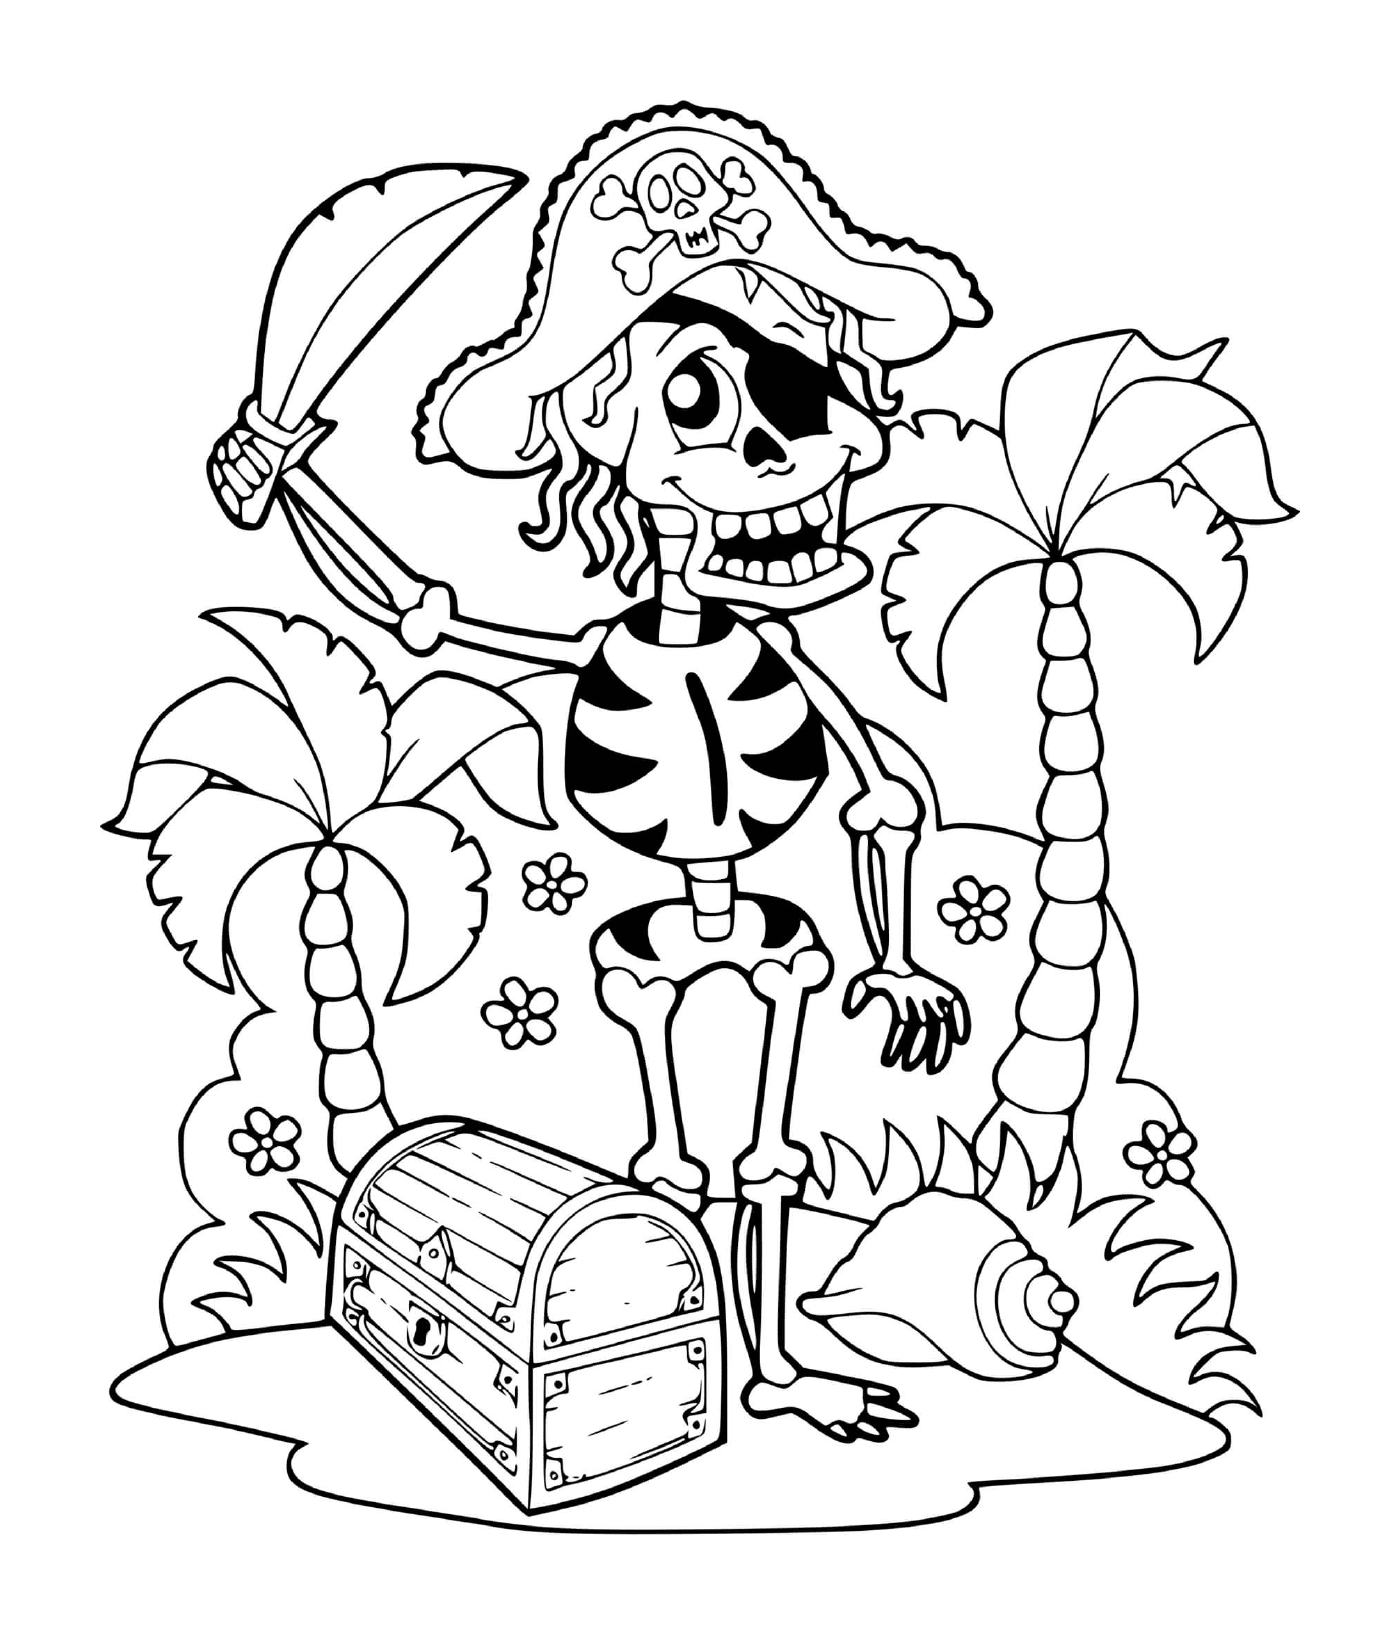  Пиратский скелет с сокровищами 